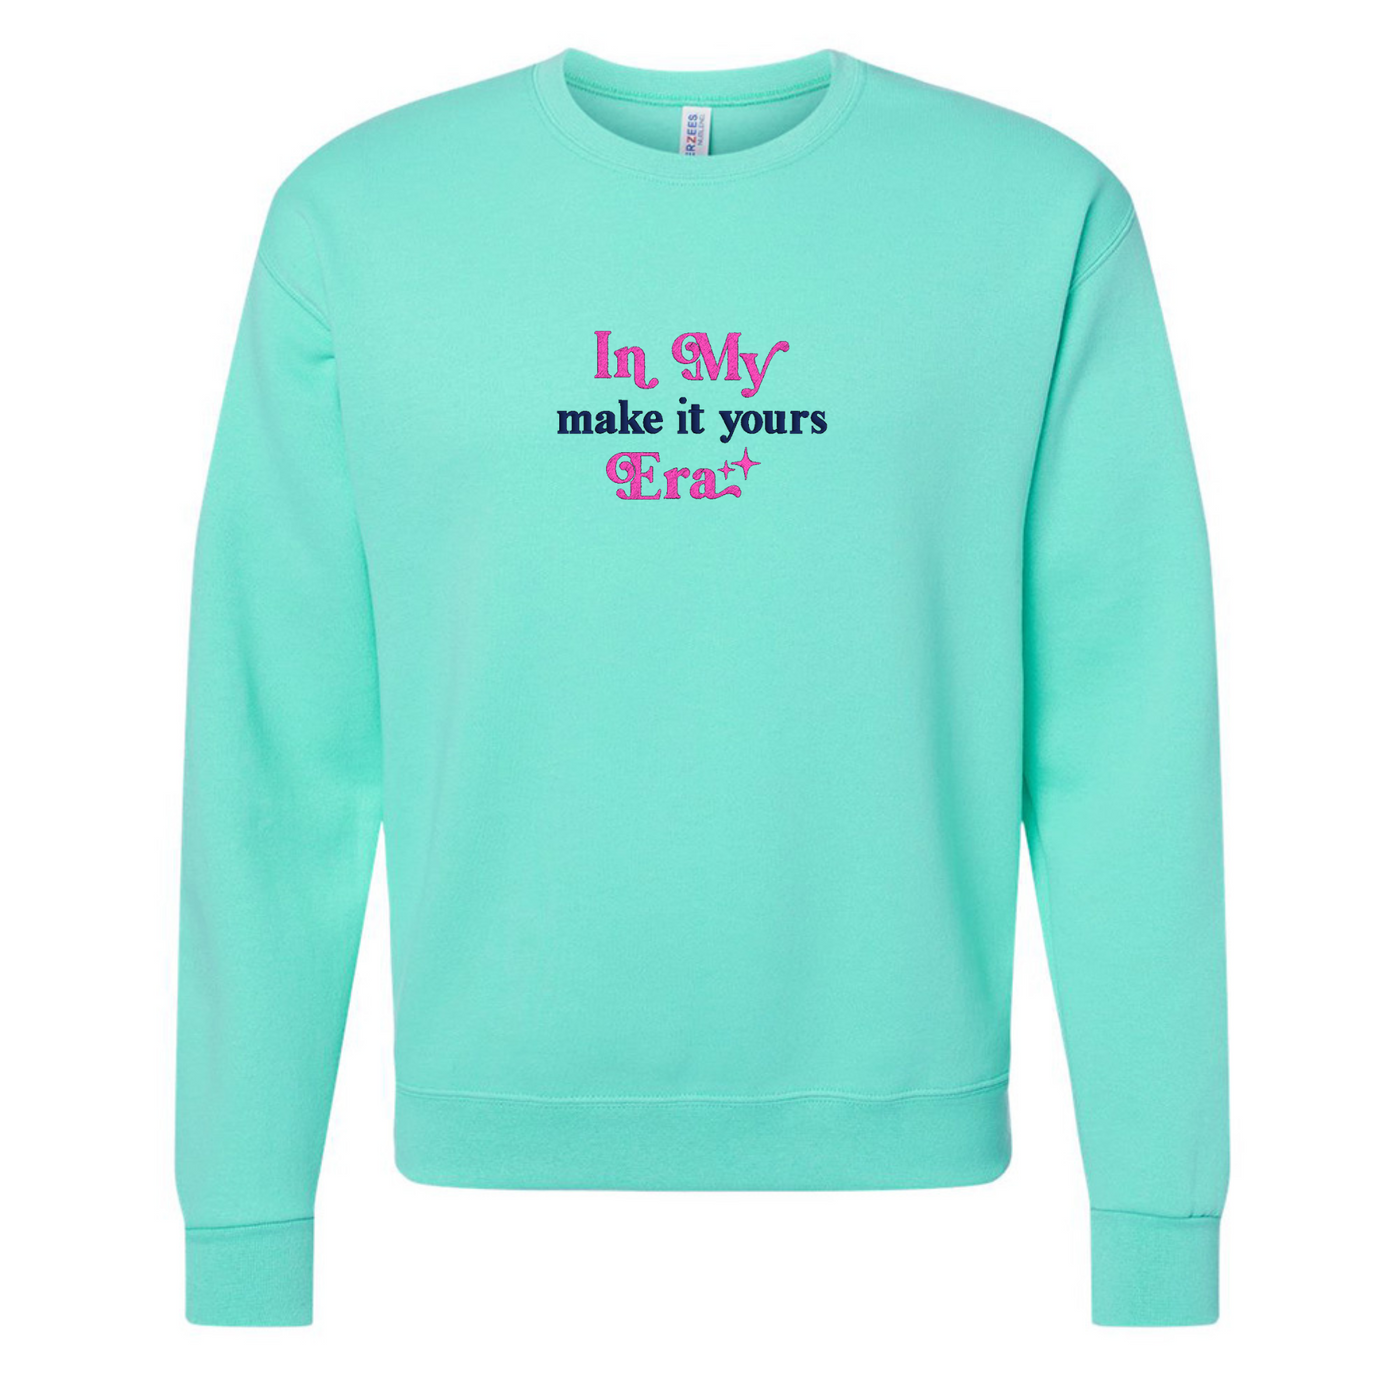 Make It Yours™ 'In My ___ Era' Crewneck Sweatshirt